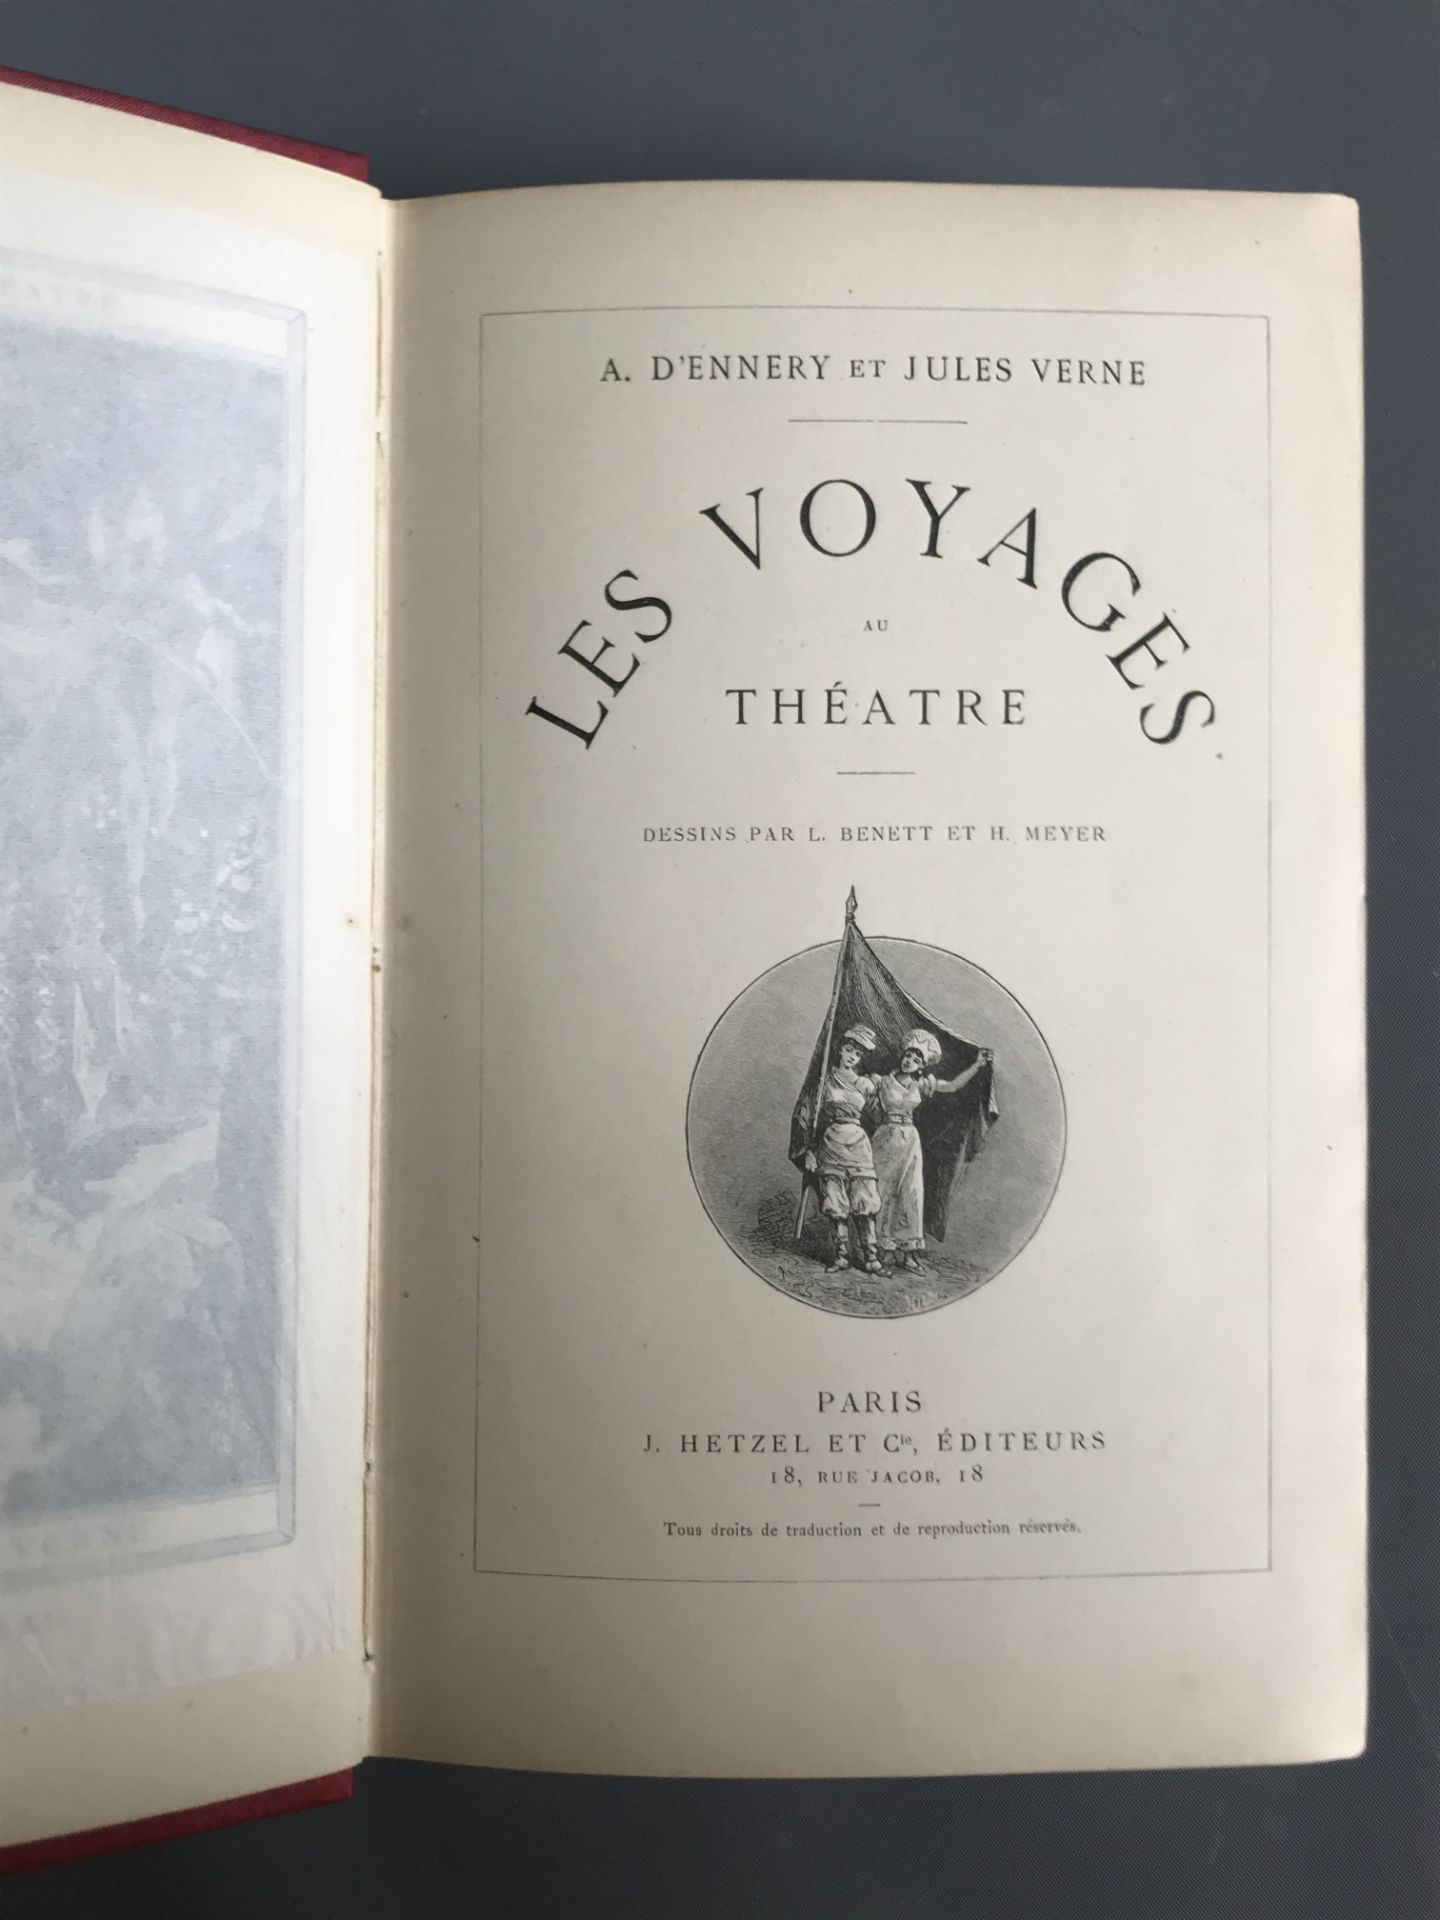 VERNE Jules et A. d'ENNERY. Les Voyages au théâtre - Dessins par L. Bennet et H. [...] - Image 4 of 4